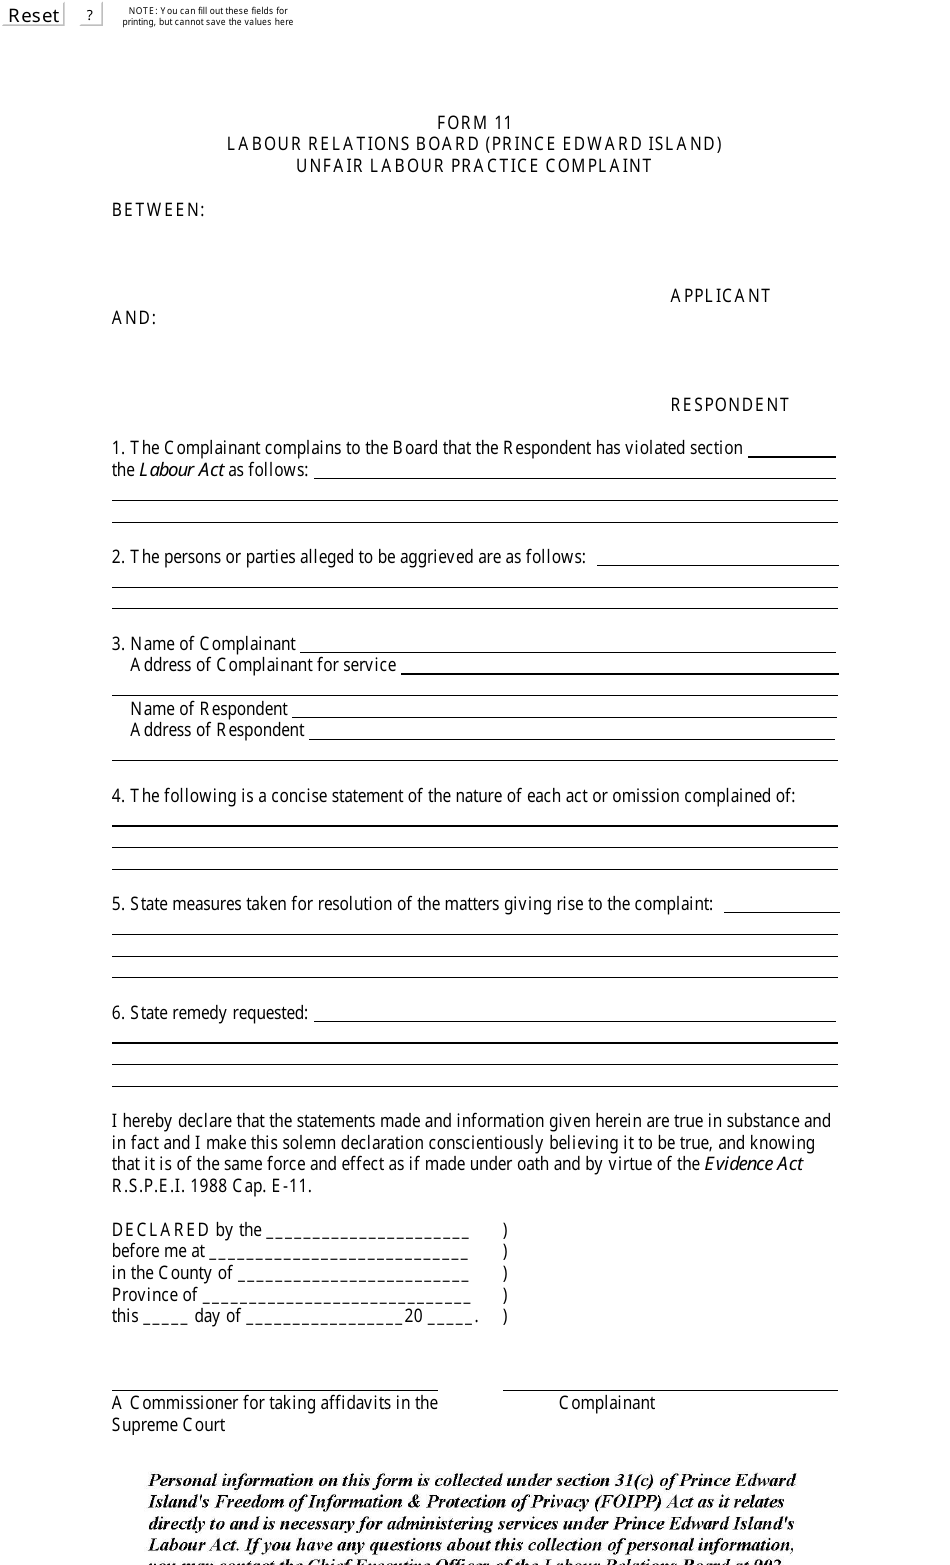 Form 11 Unfair Labour Practice Complaint - Prince Edward Island, Canada, Page 1